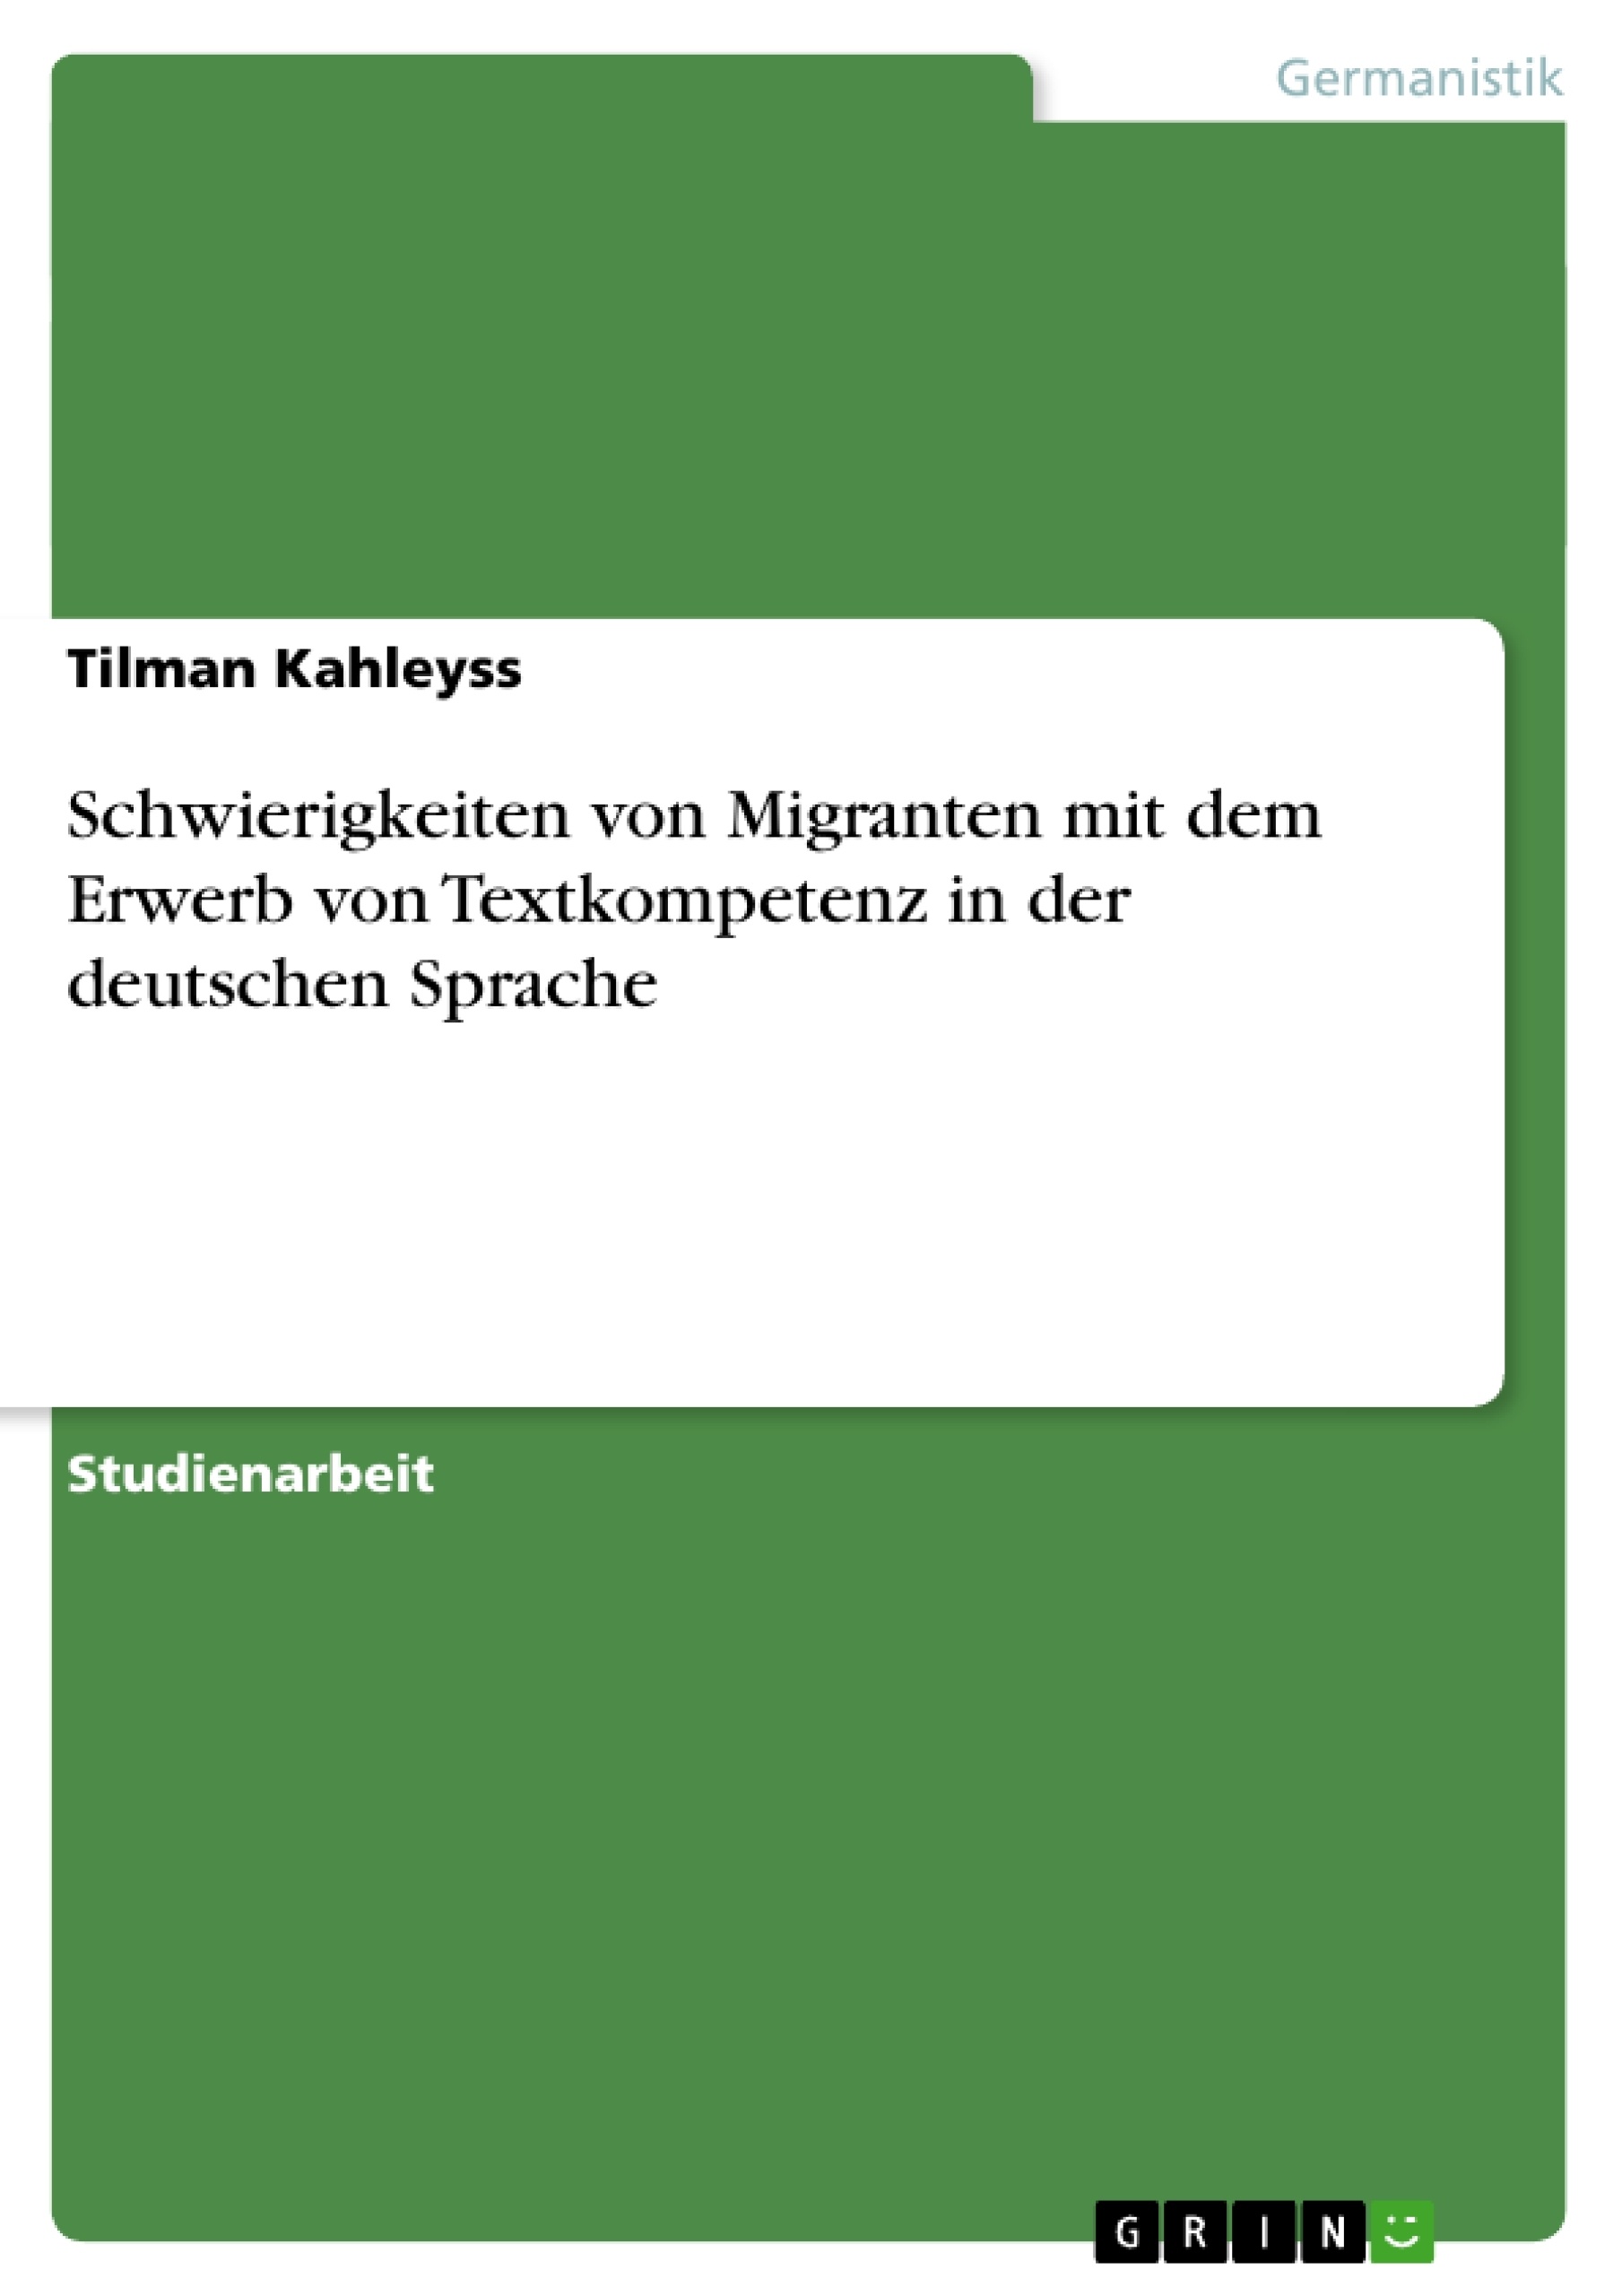 Título: Schwierigkeiten von Migranten mit dem Erwerb von Textkompetenz in der deutschen Sprache